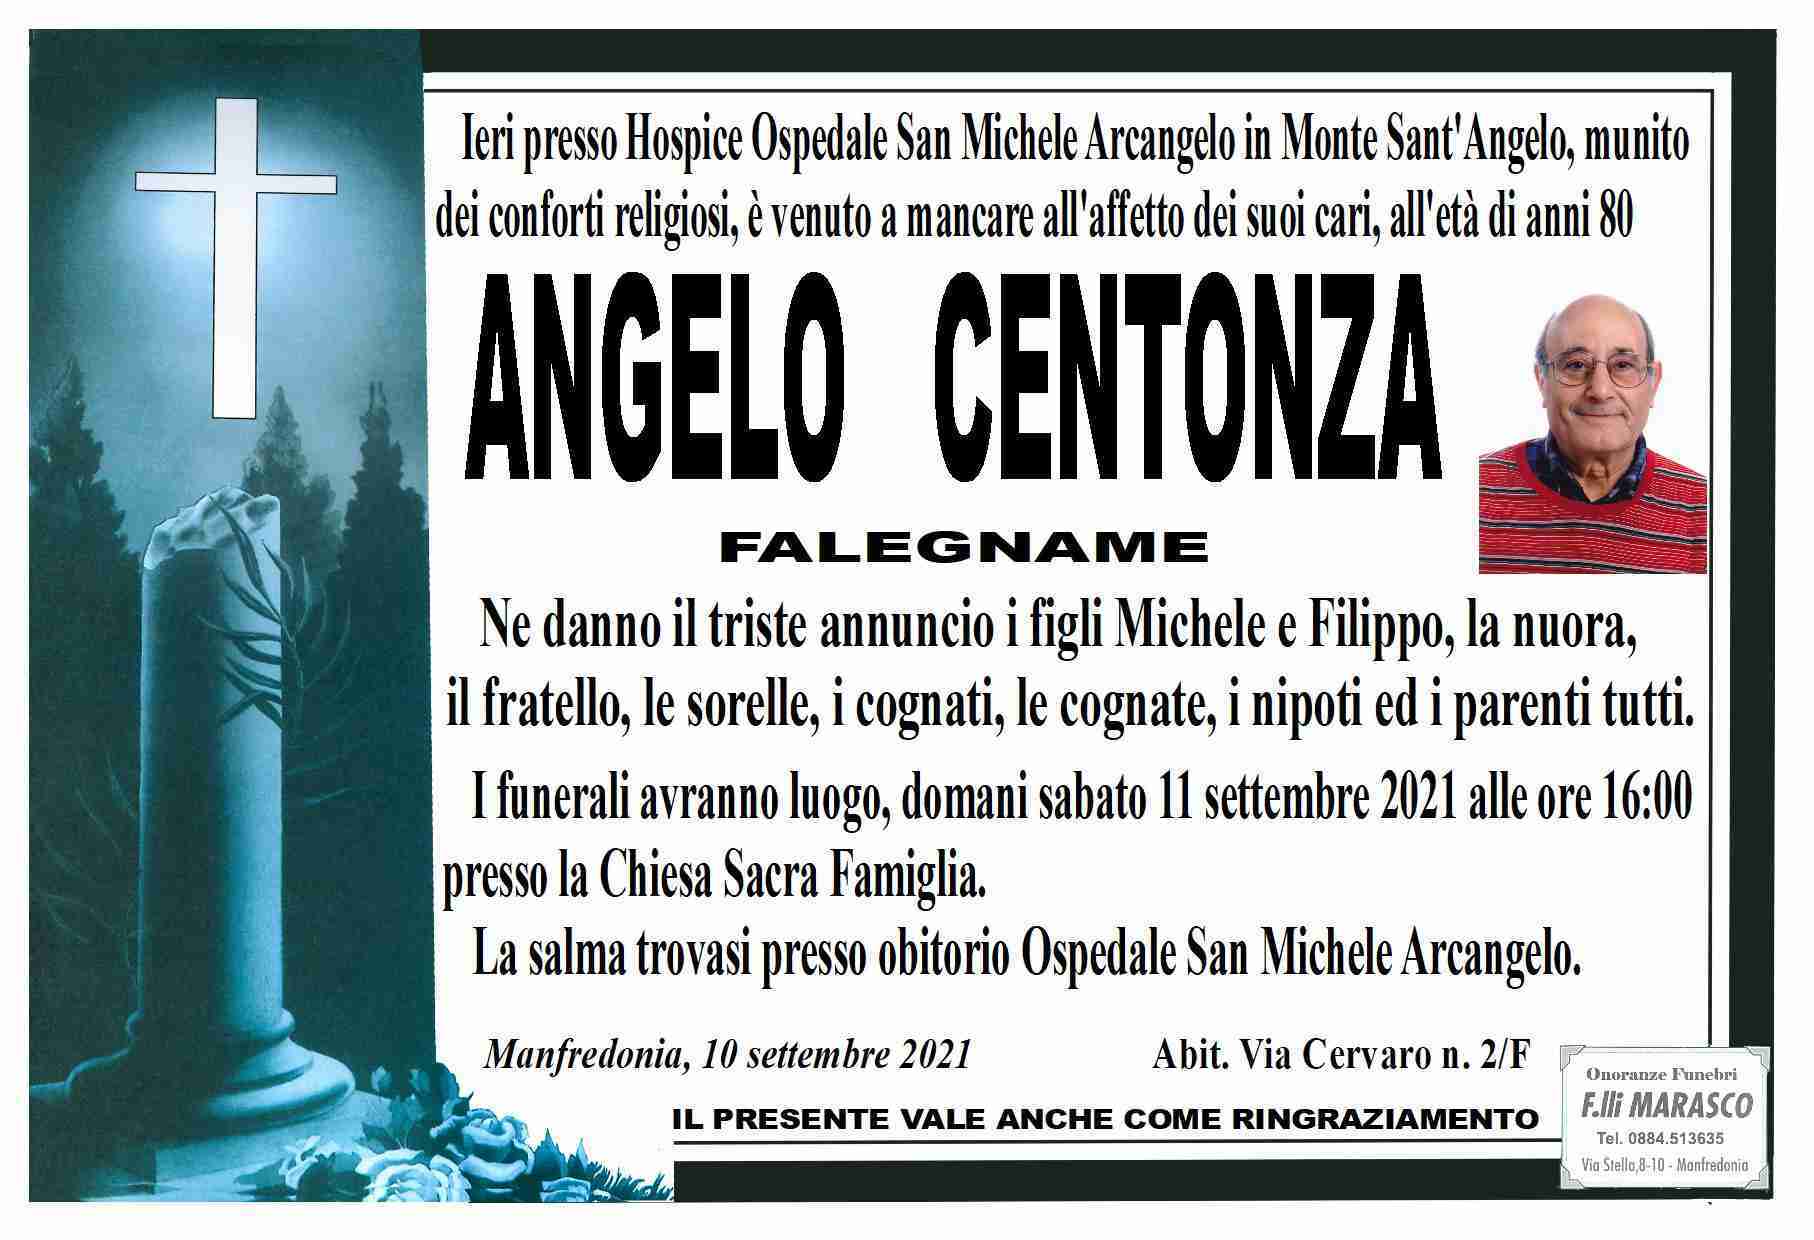 Angelo Centonza